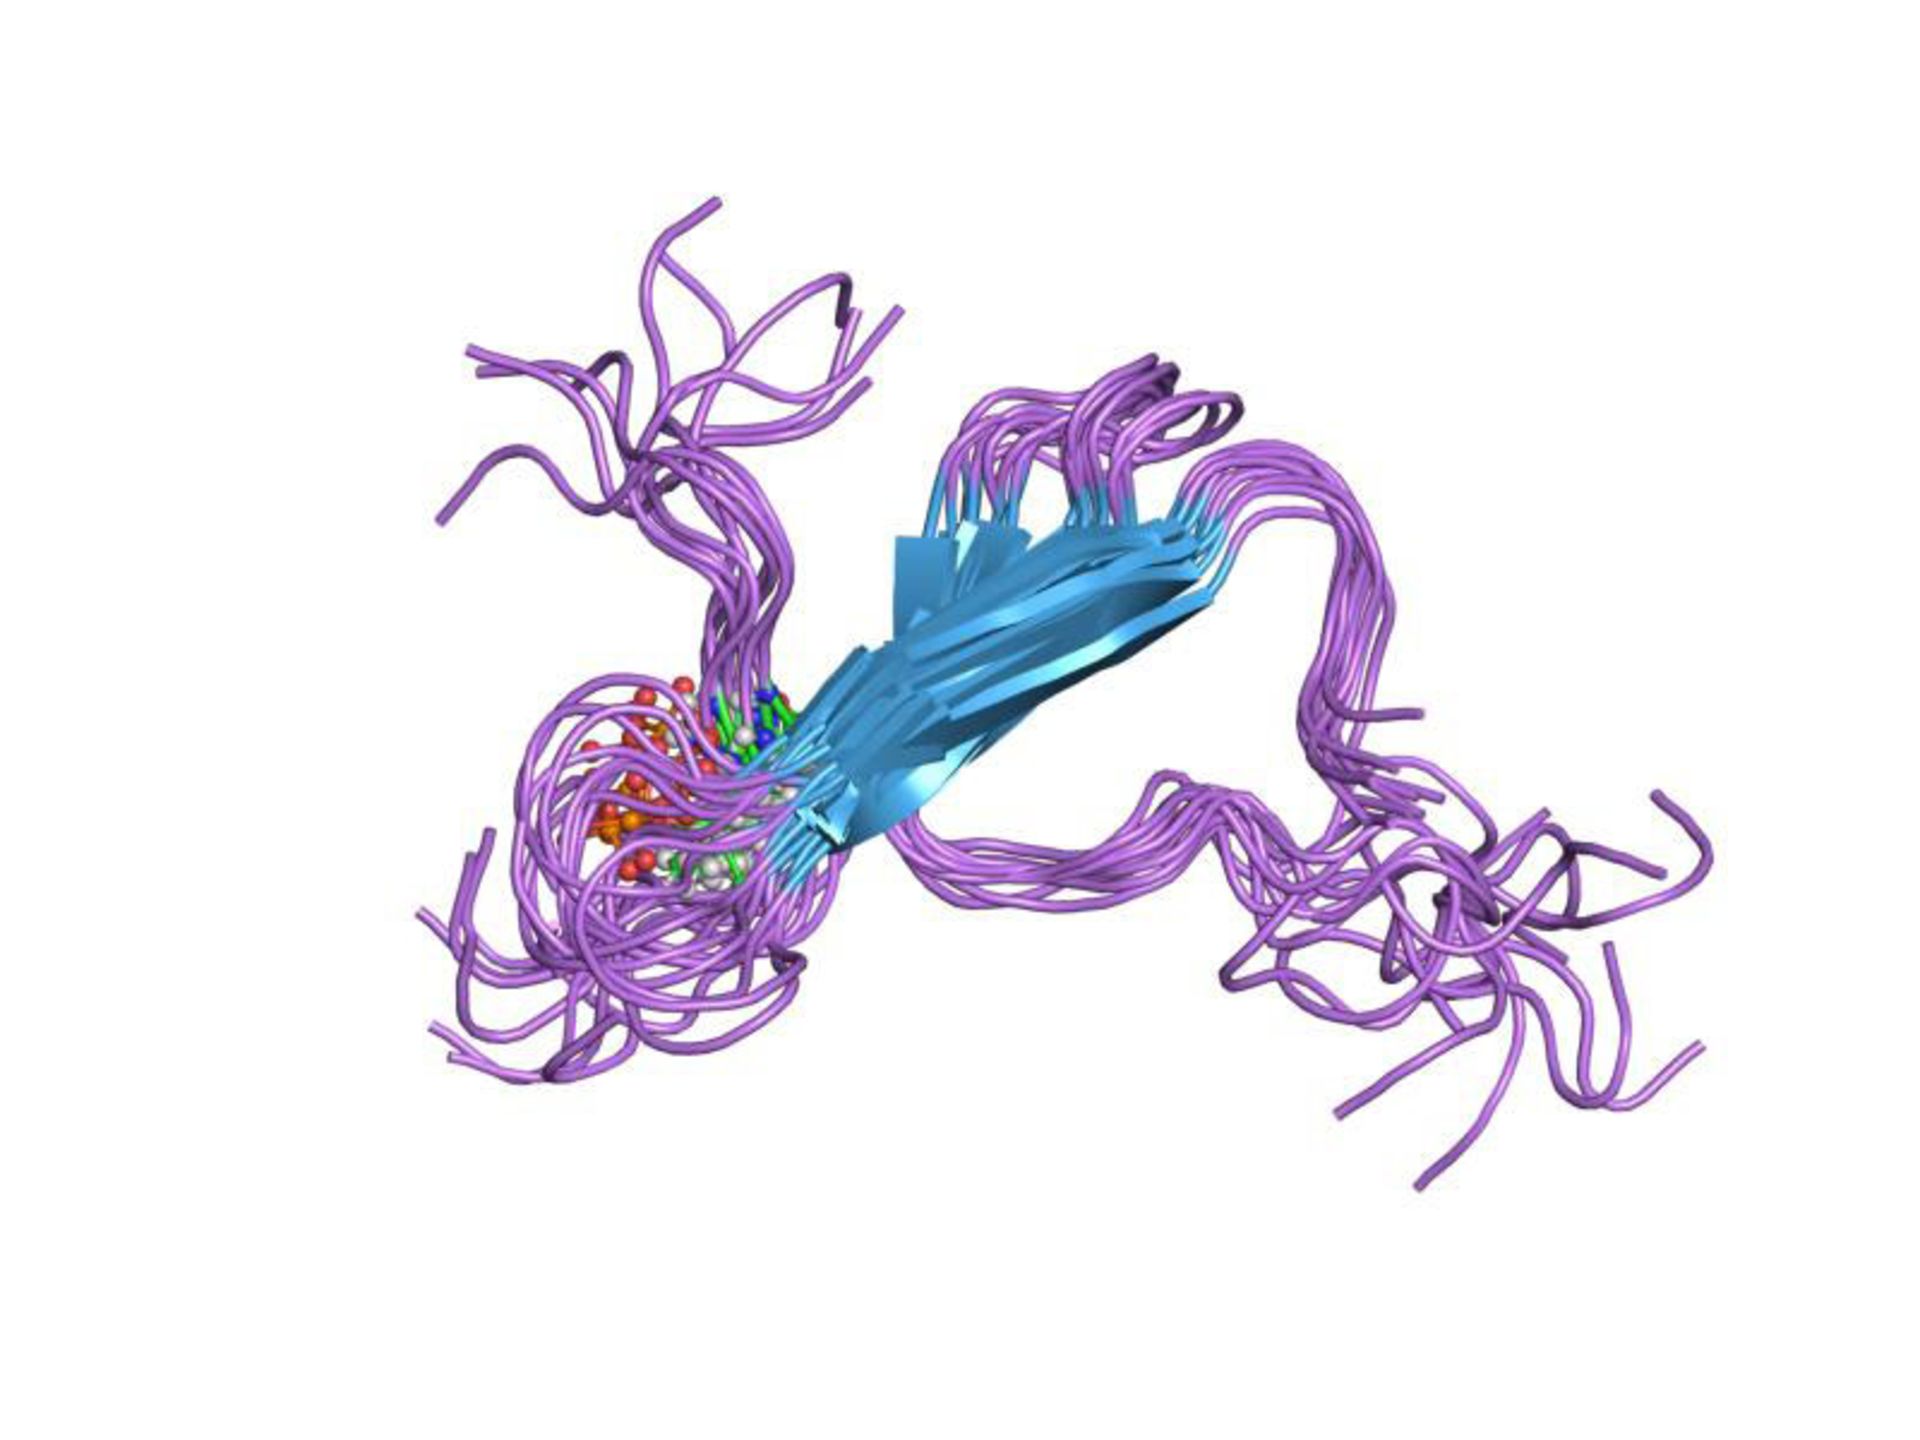 ساختار سه بعدی پروتئین تائو / tau protein